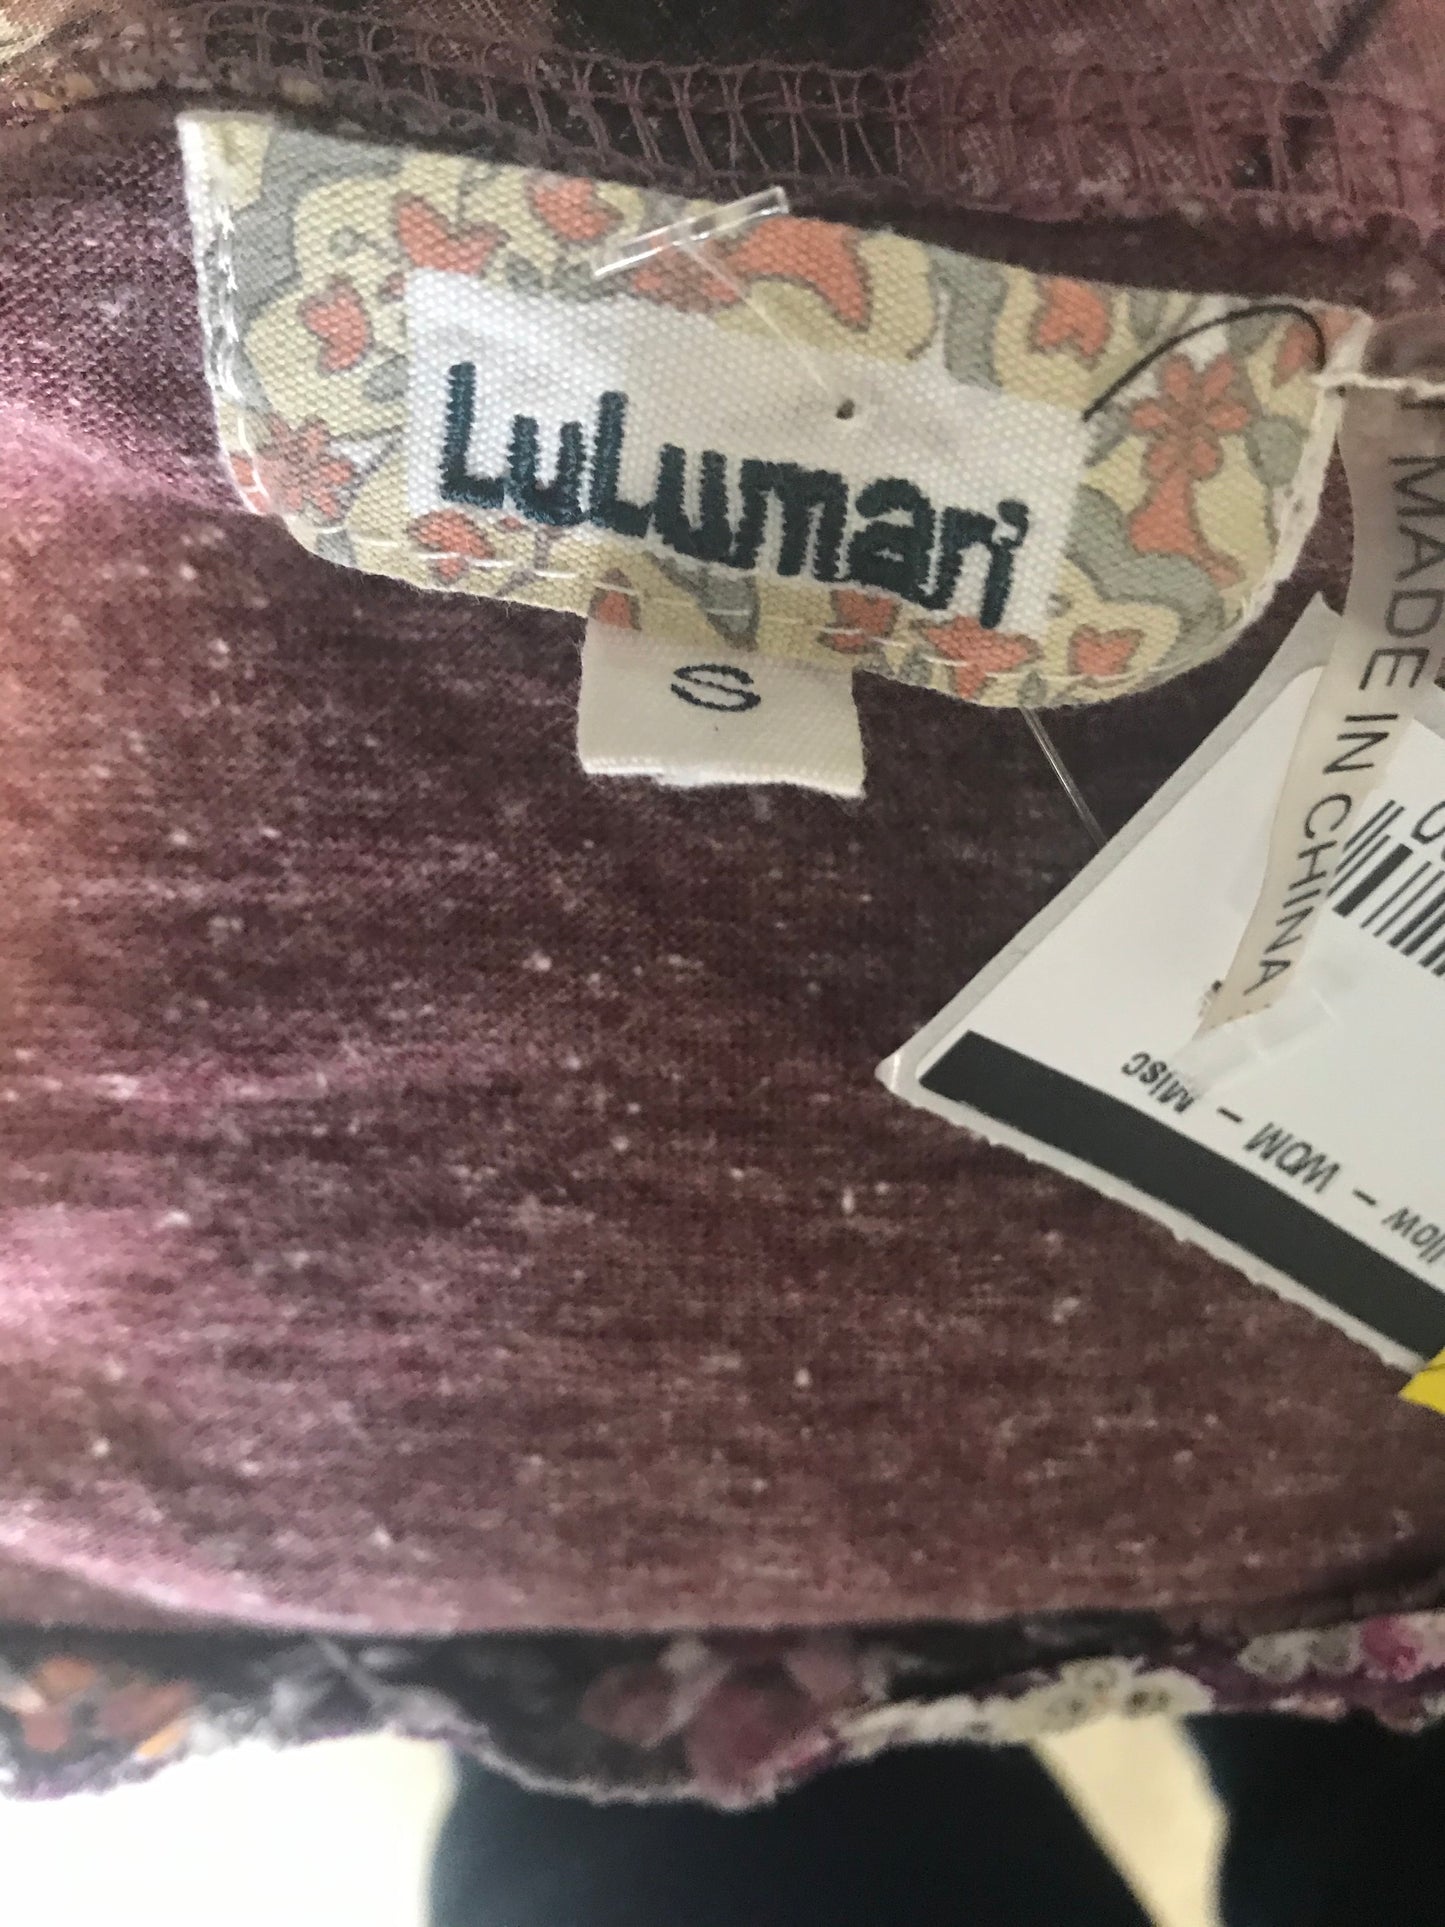 LuLuMari dress